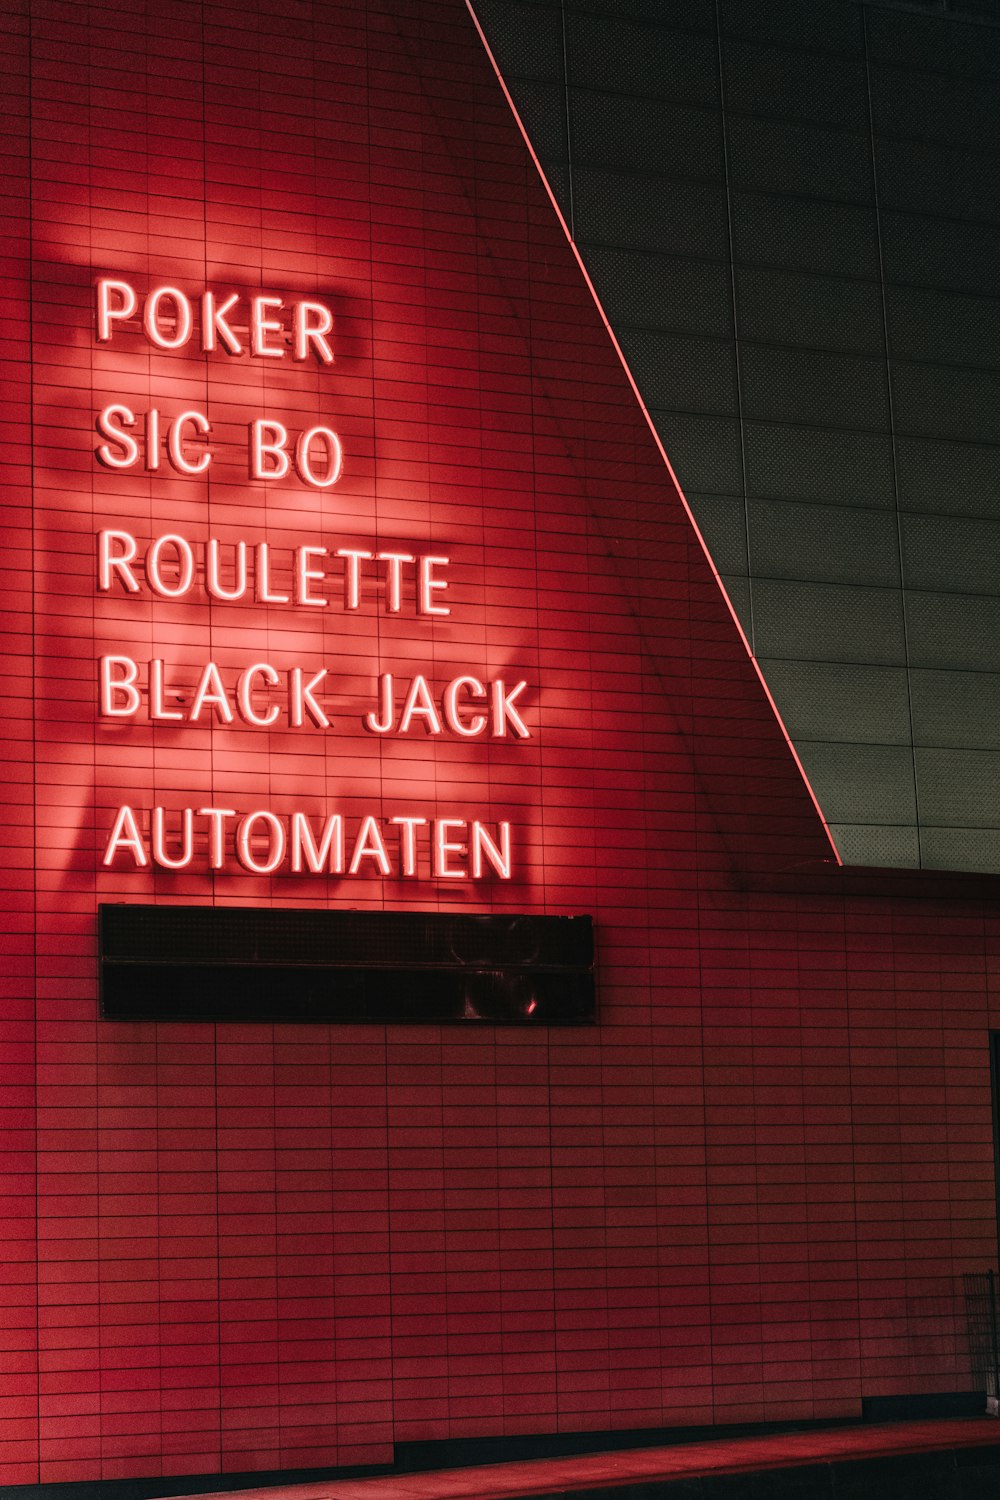 éclairé Poker sic bo roulette black jack automaten néons